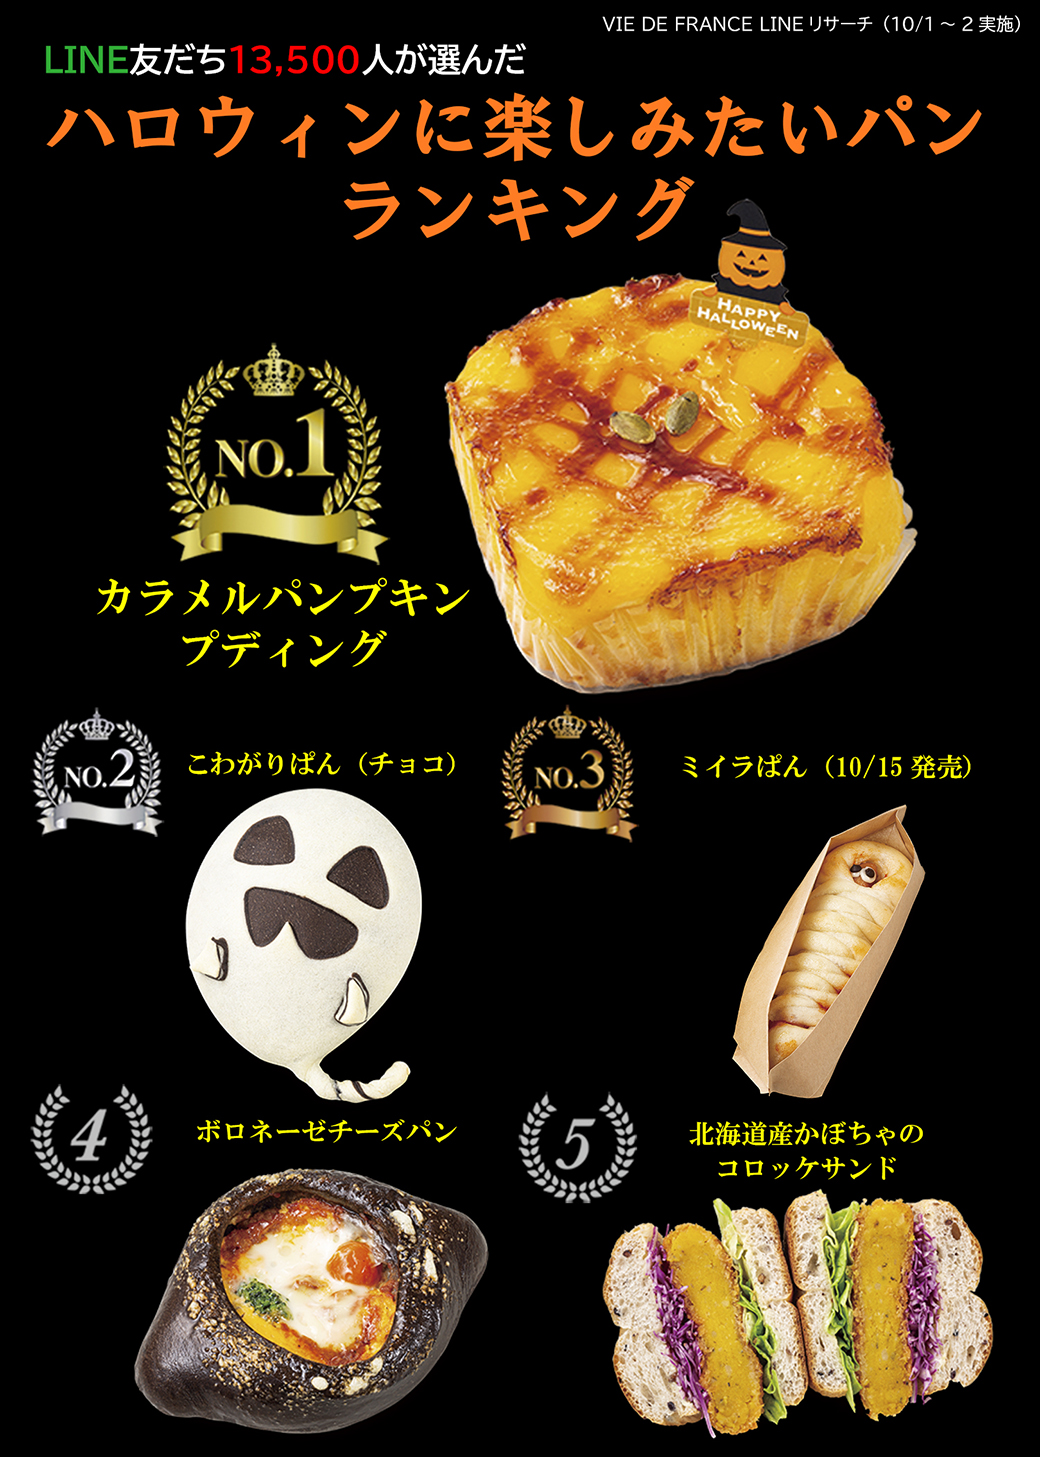 10月新商品「ハロウィンに楽しみたいパン」ランキング発表